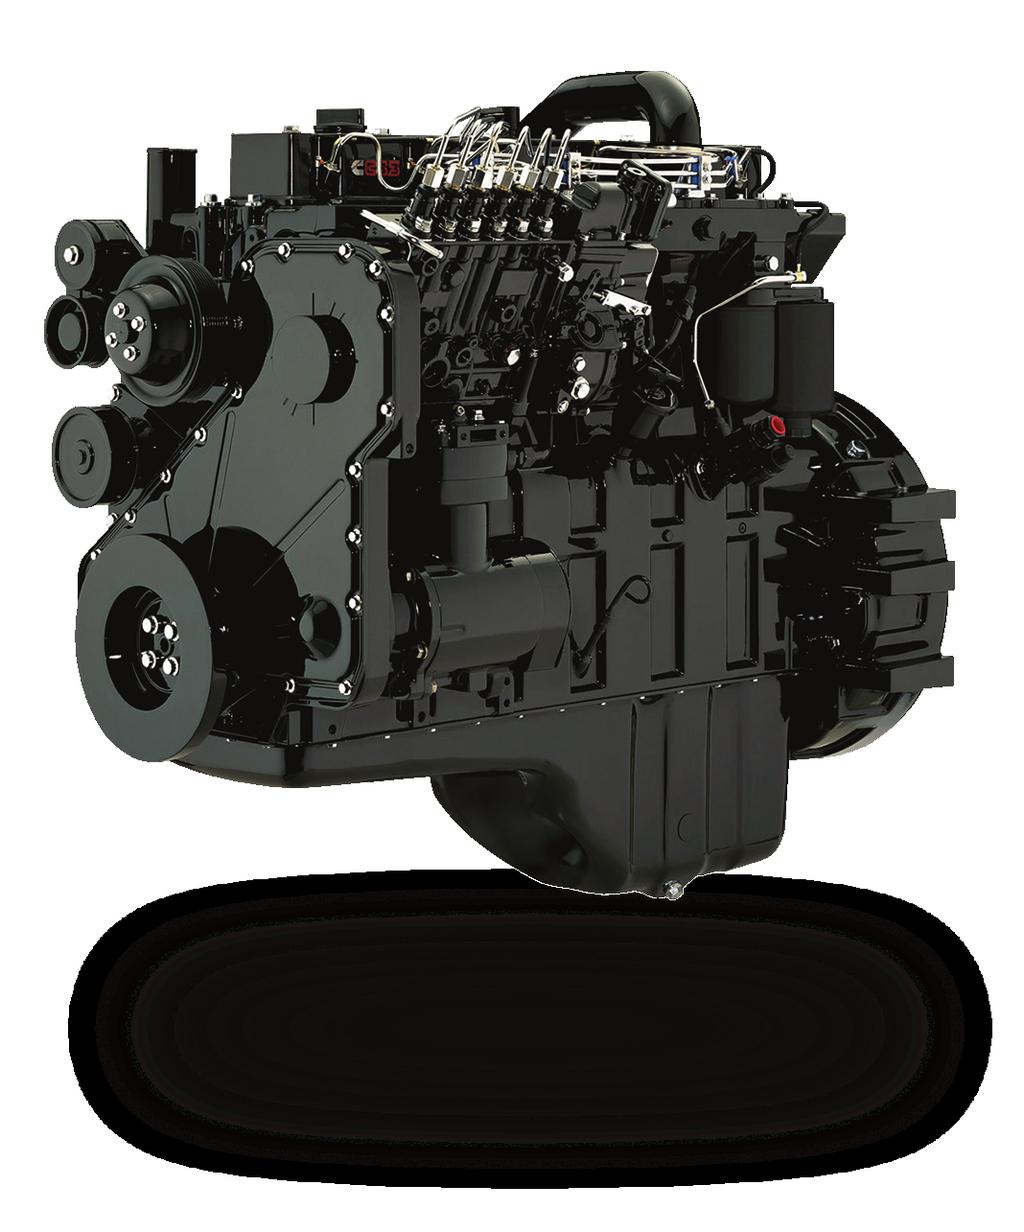 Motor Cummins Serie C, 6 Cilindros en línea El motor Cummins cuenta con un Sistema de inyección de combustible de alta presión (1000 1200 bar) y 5 inyectores de apertura.